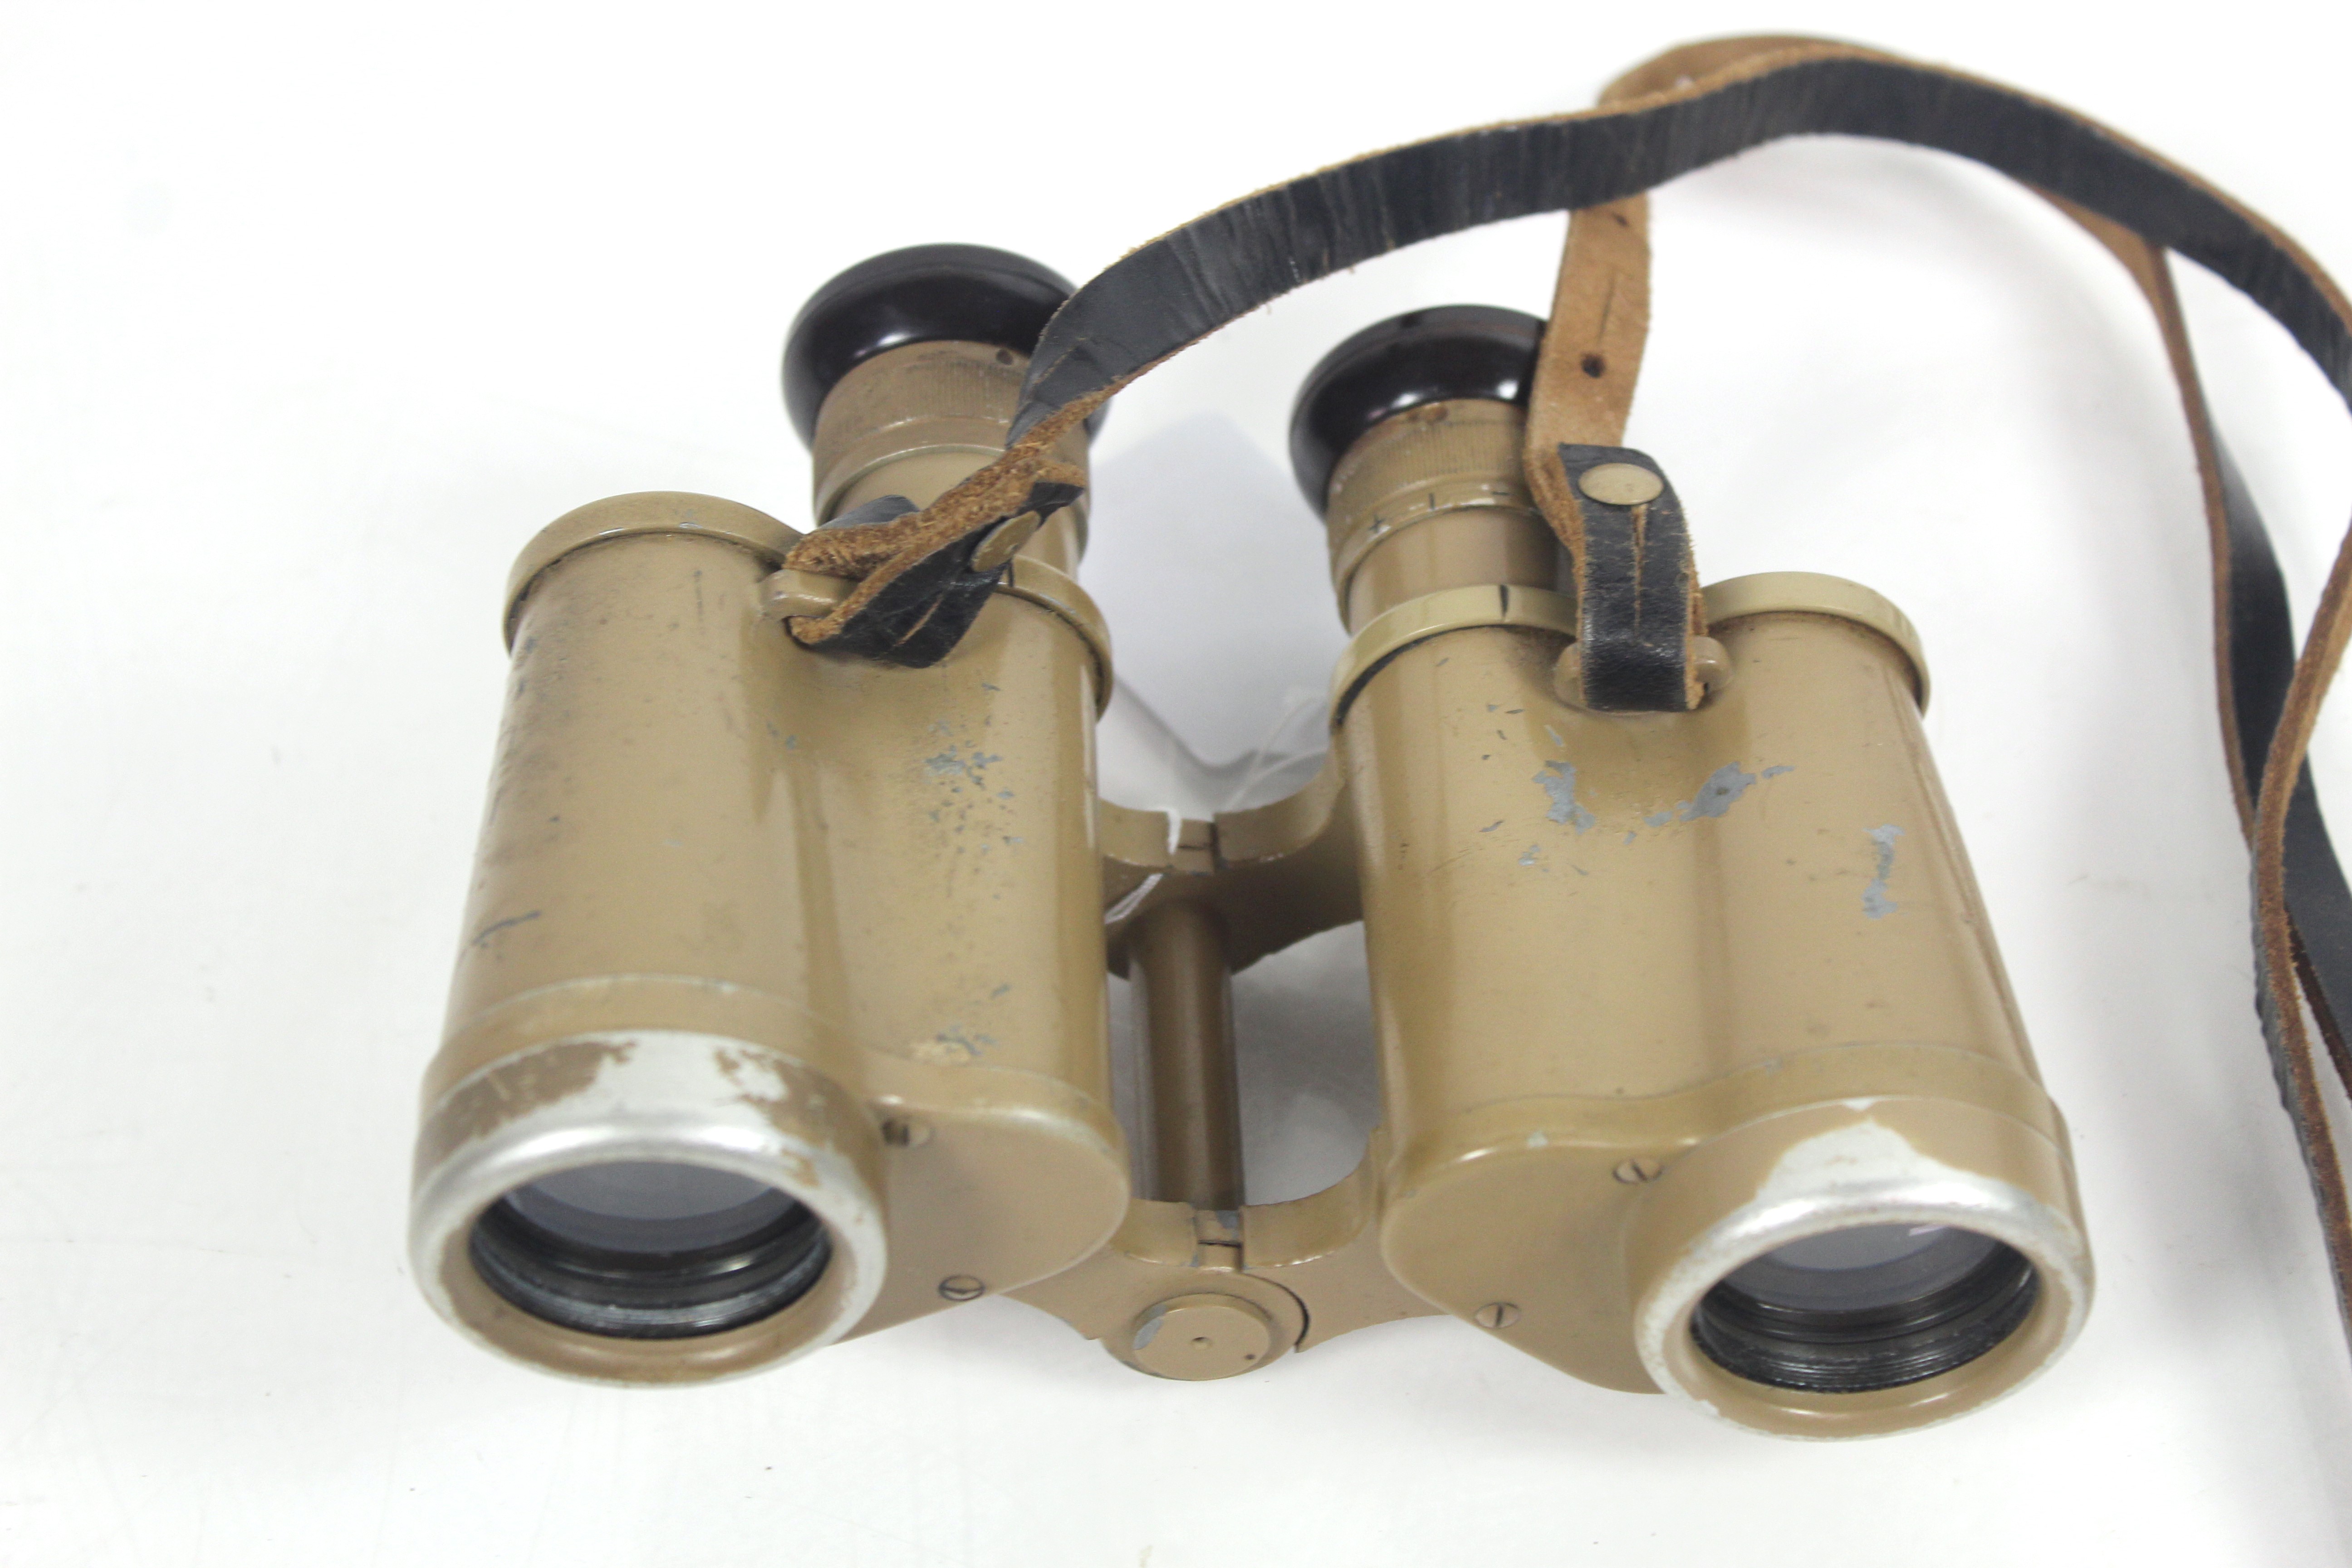 A pair of WWII era German binoculars marked 6x30 a - Bild 4 aus 4